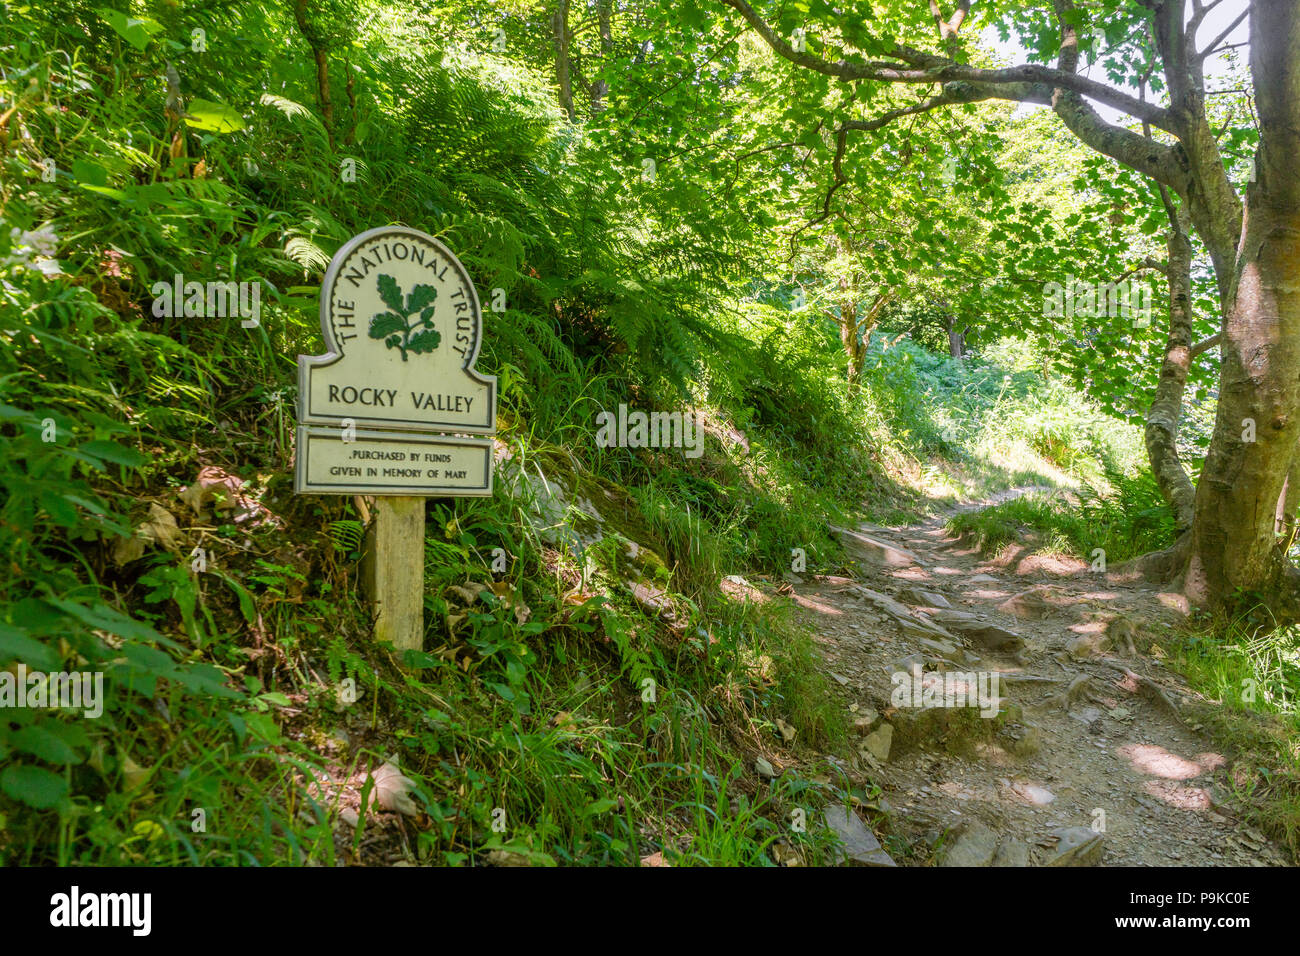 Abbondante vegetazione in valle rocciosa con il National Trust segno estate 2018, North Cornwall, Cornwall, Regno Unito Foto Stock